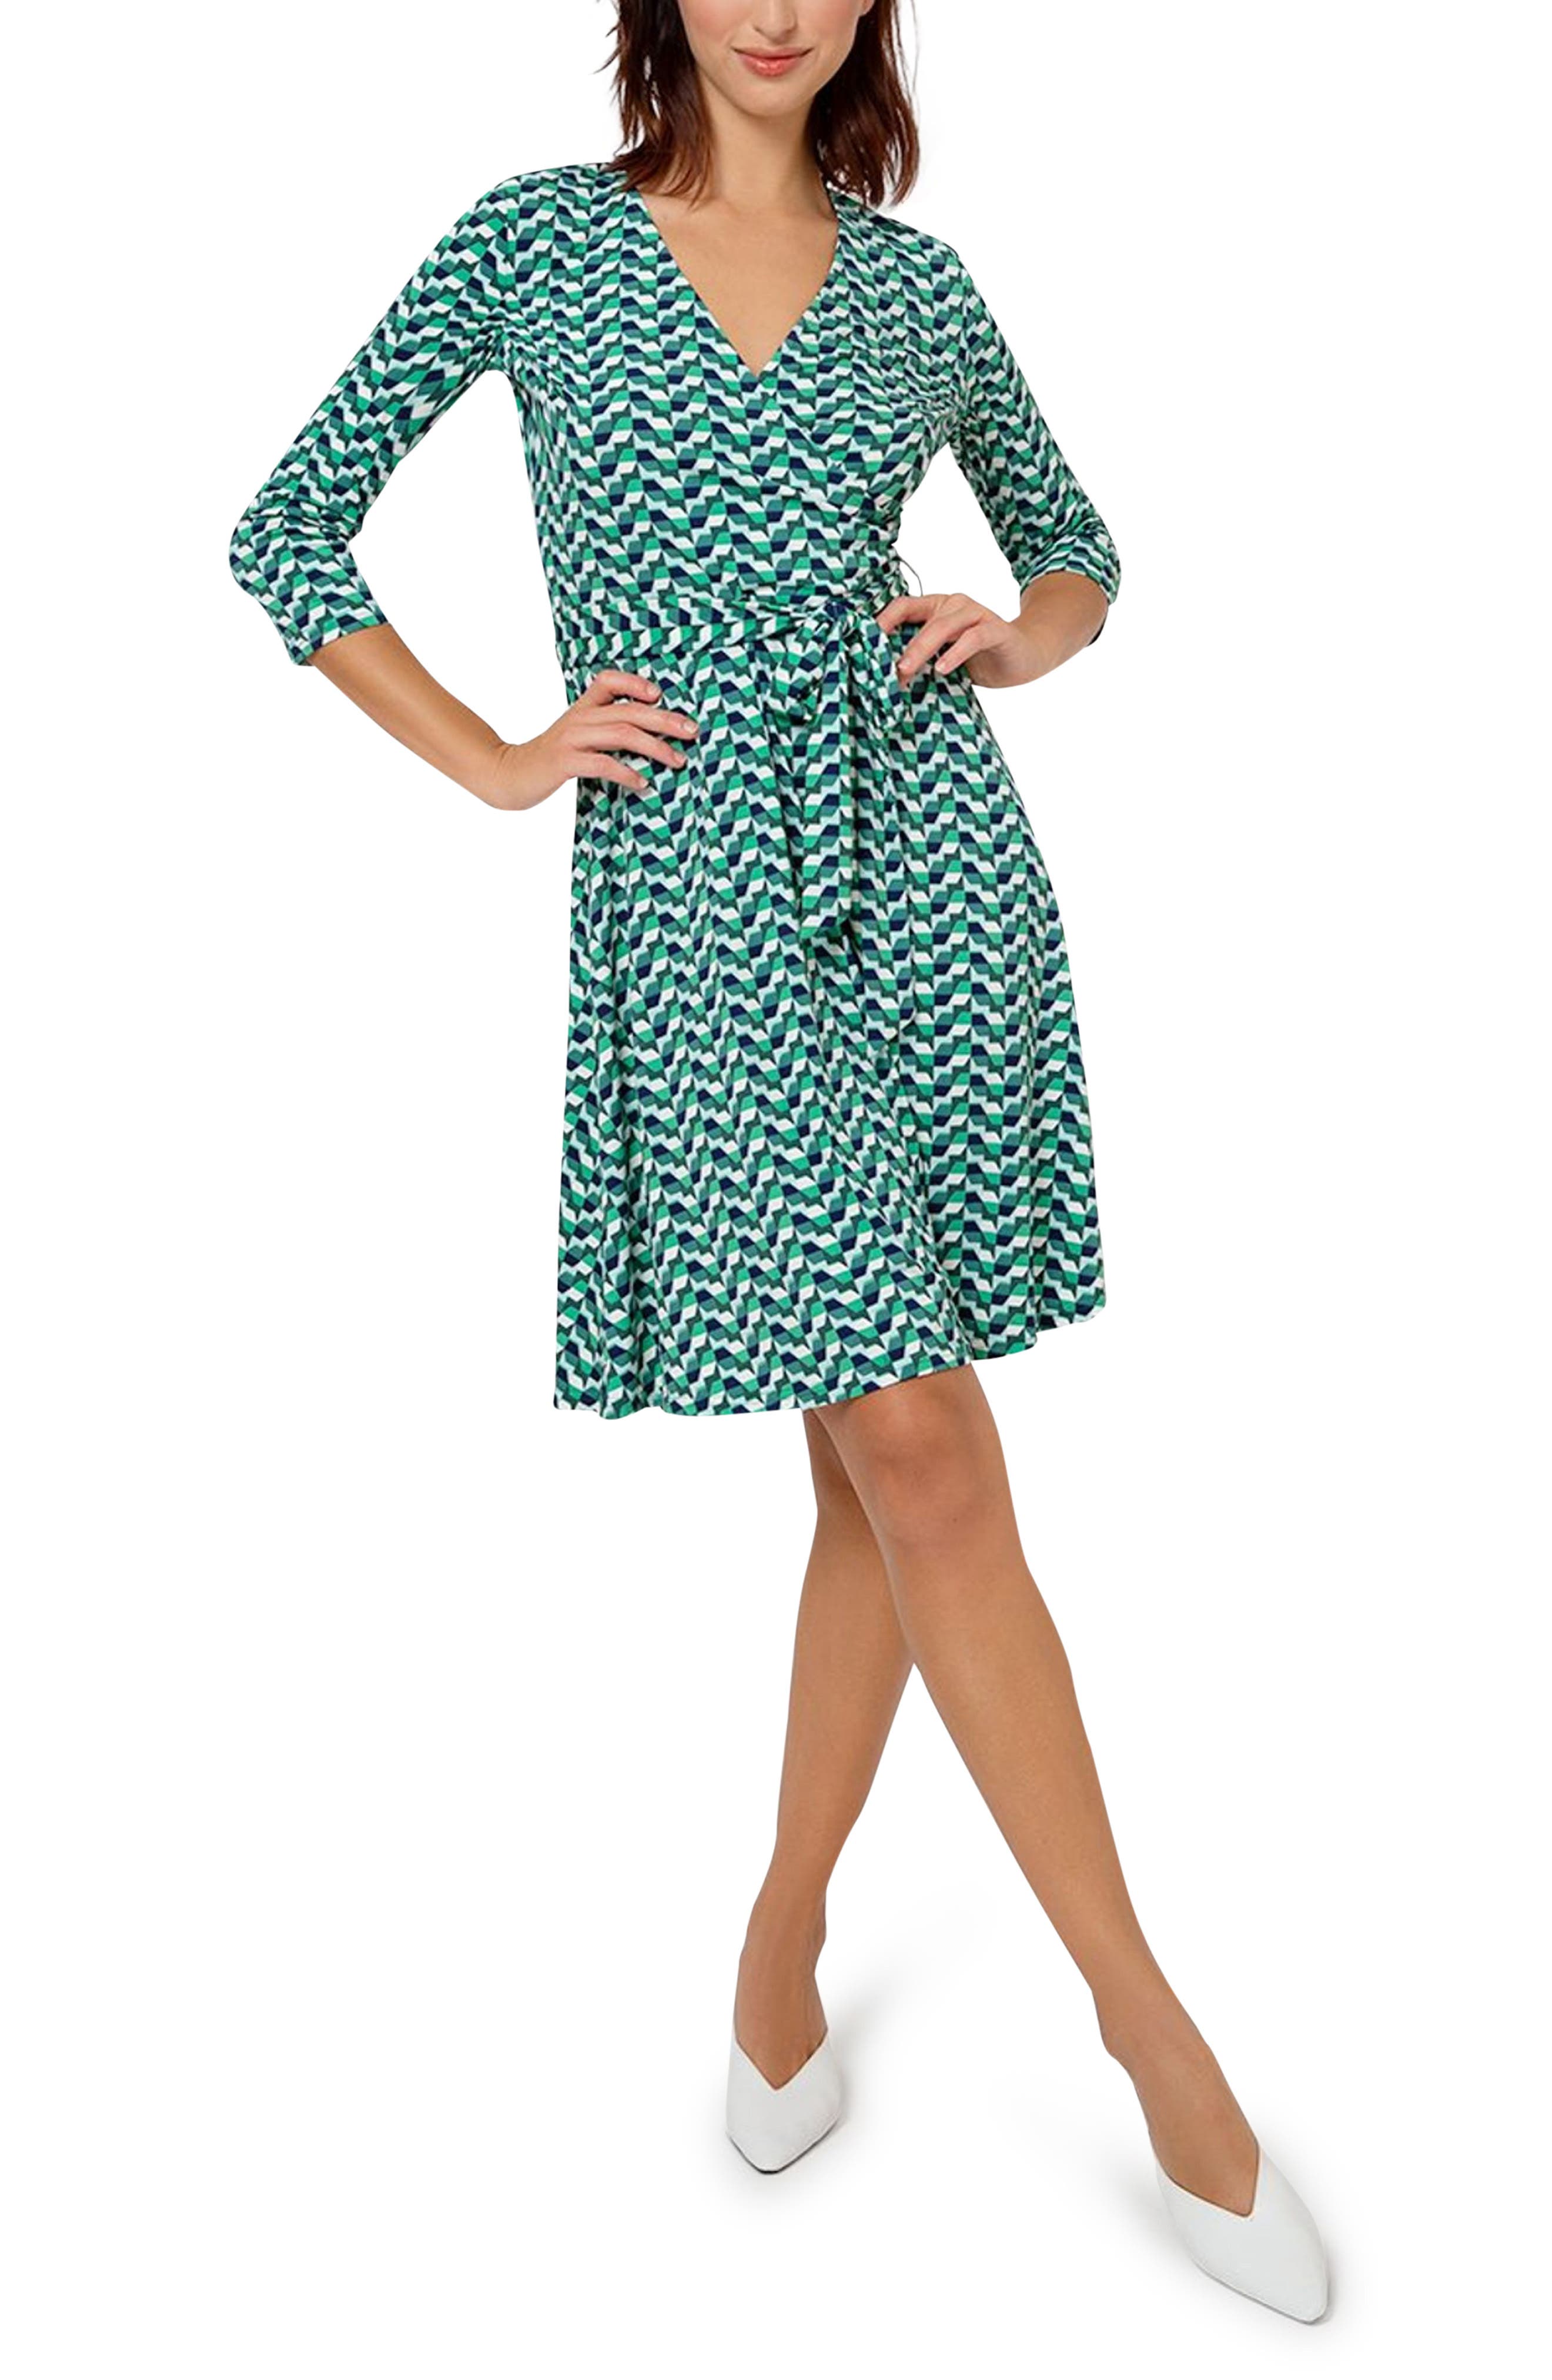 Leota Perfect Long Sleeve Faux Wrap Dress in Mgkg - Mod Geo Green